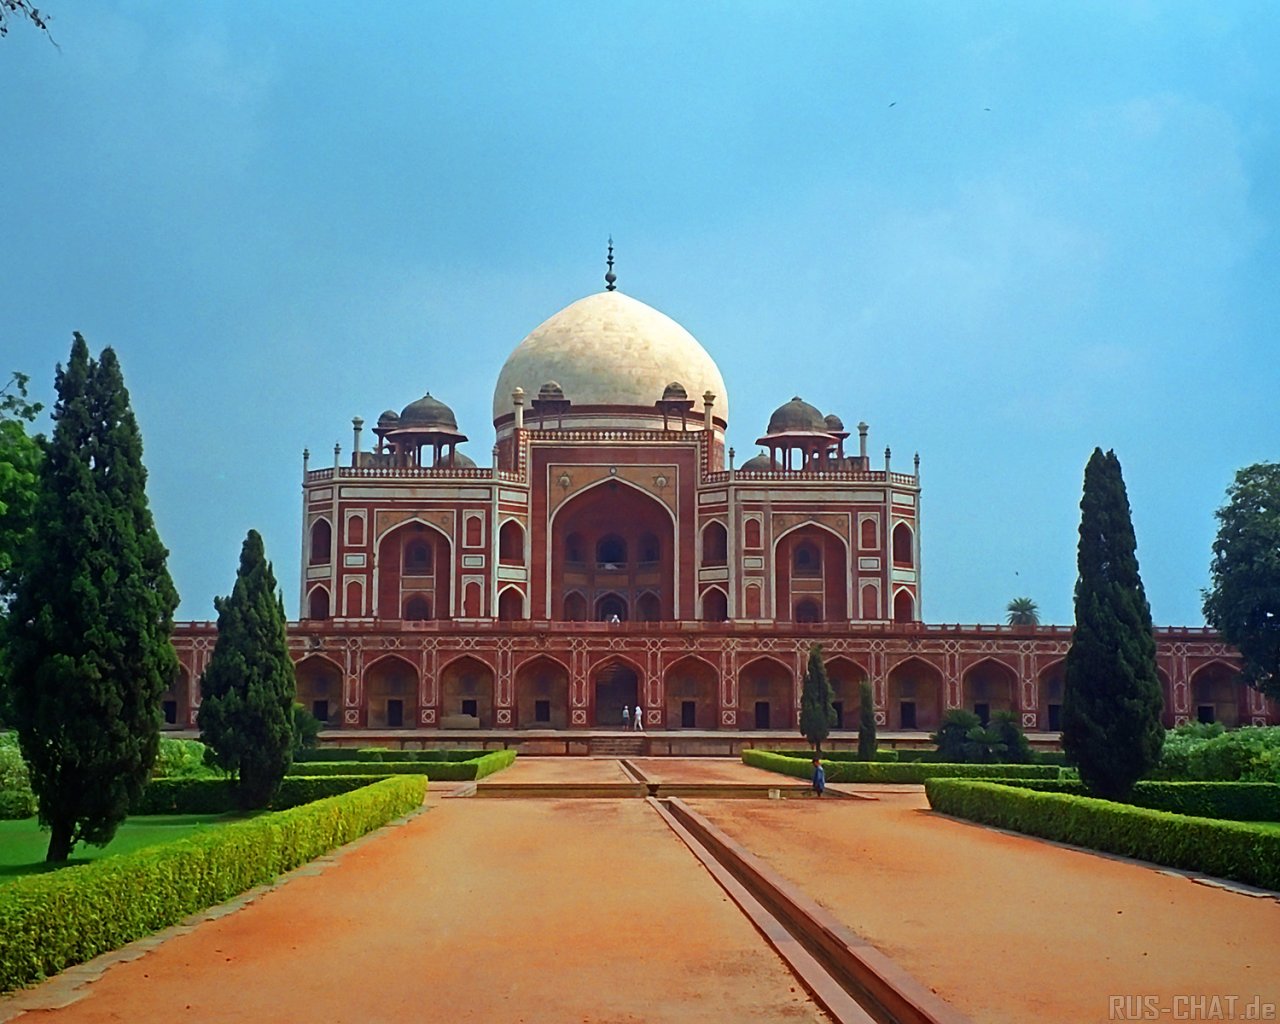 http://1.bp.blogspot.com/-55vT7TMk_fM/Tk_oYFQPn9I/AAAAAAAAMDk/rfpkDbghmgg/s1600/Taj+Mahal+Mosque-Agra+%25281%2529.jpg